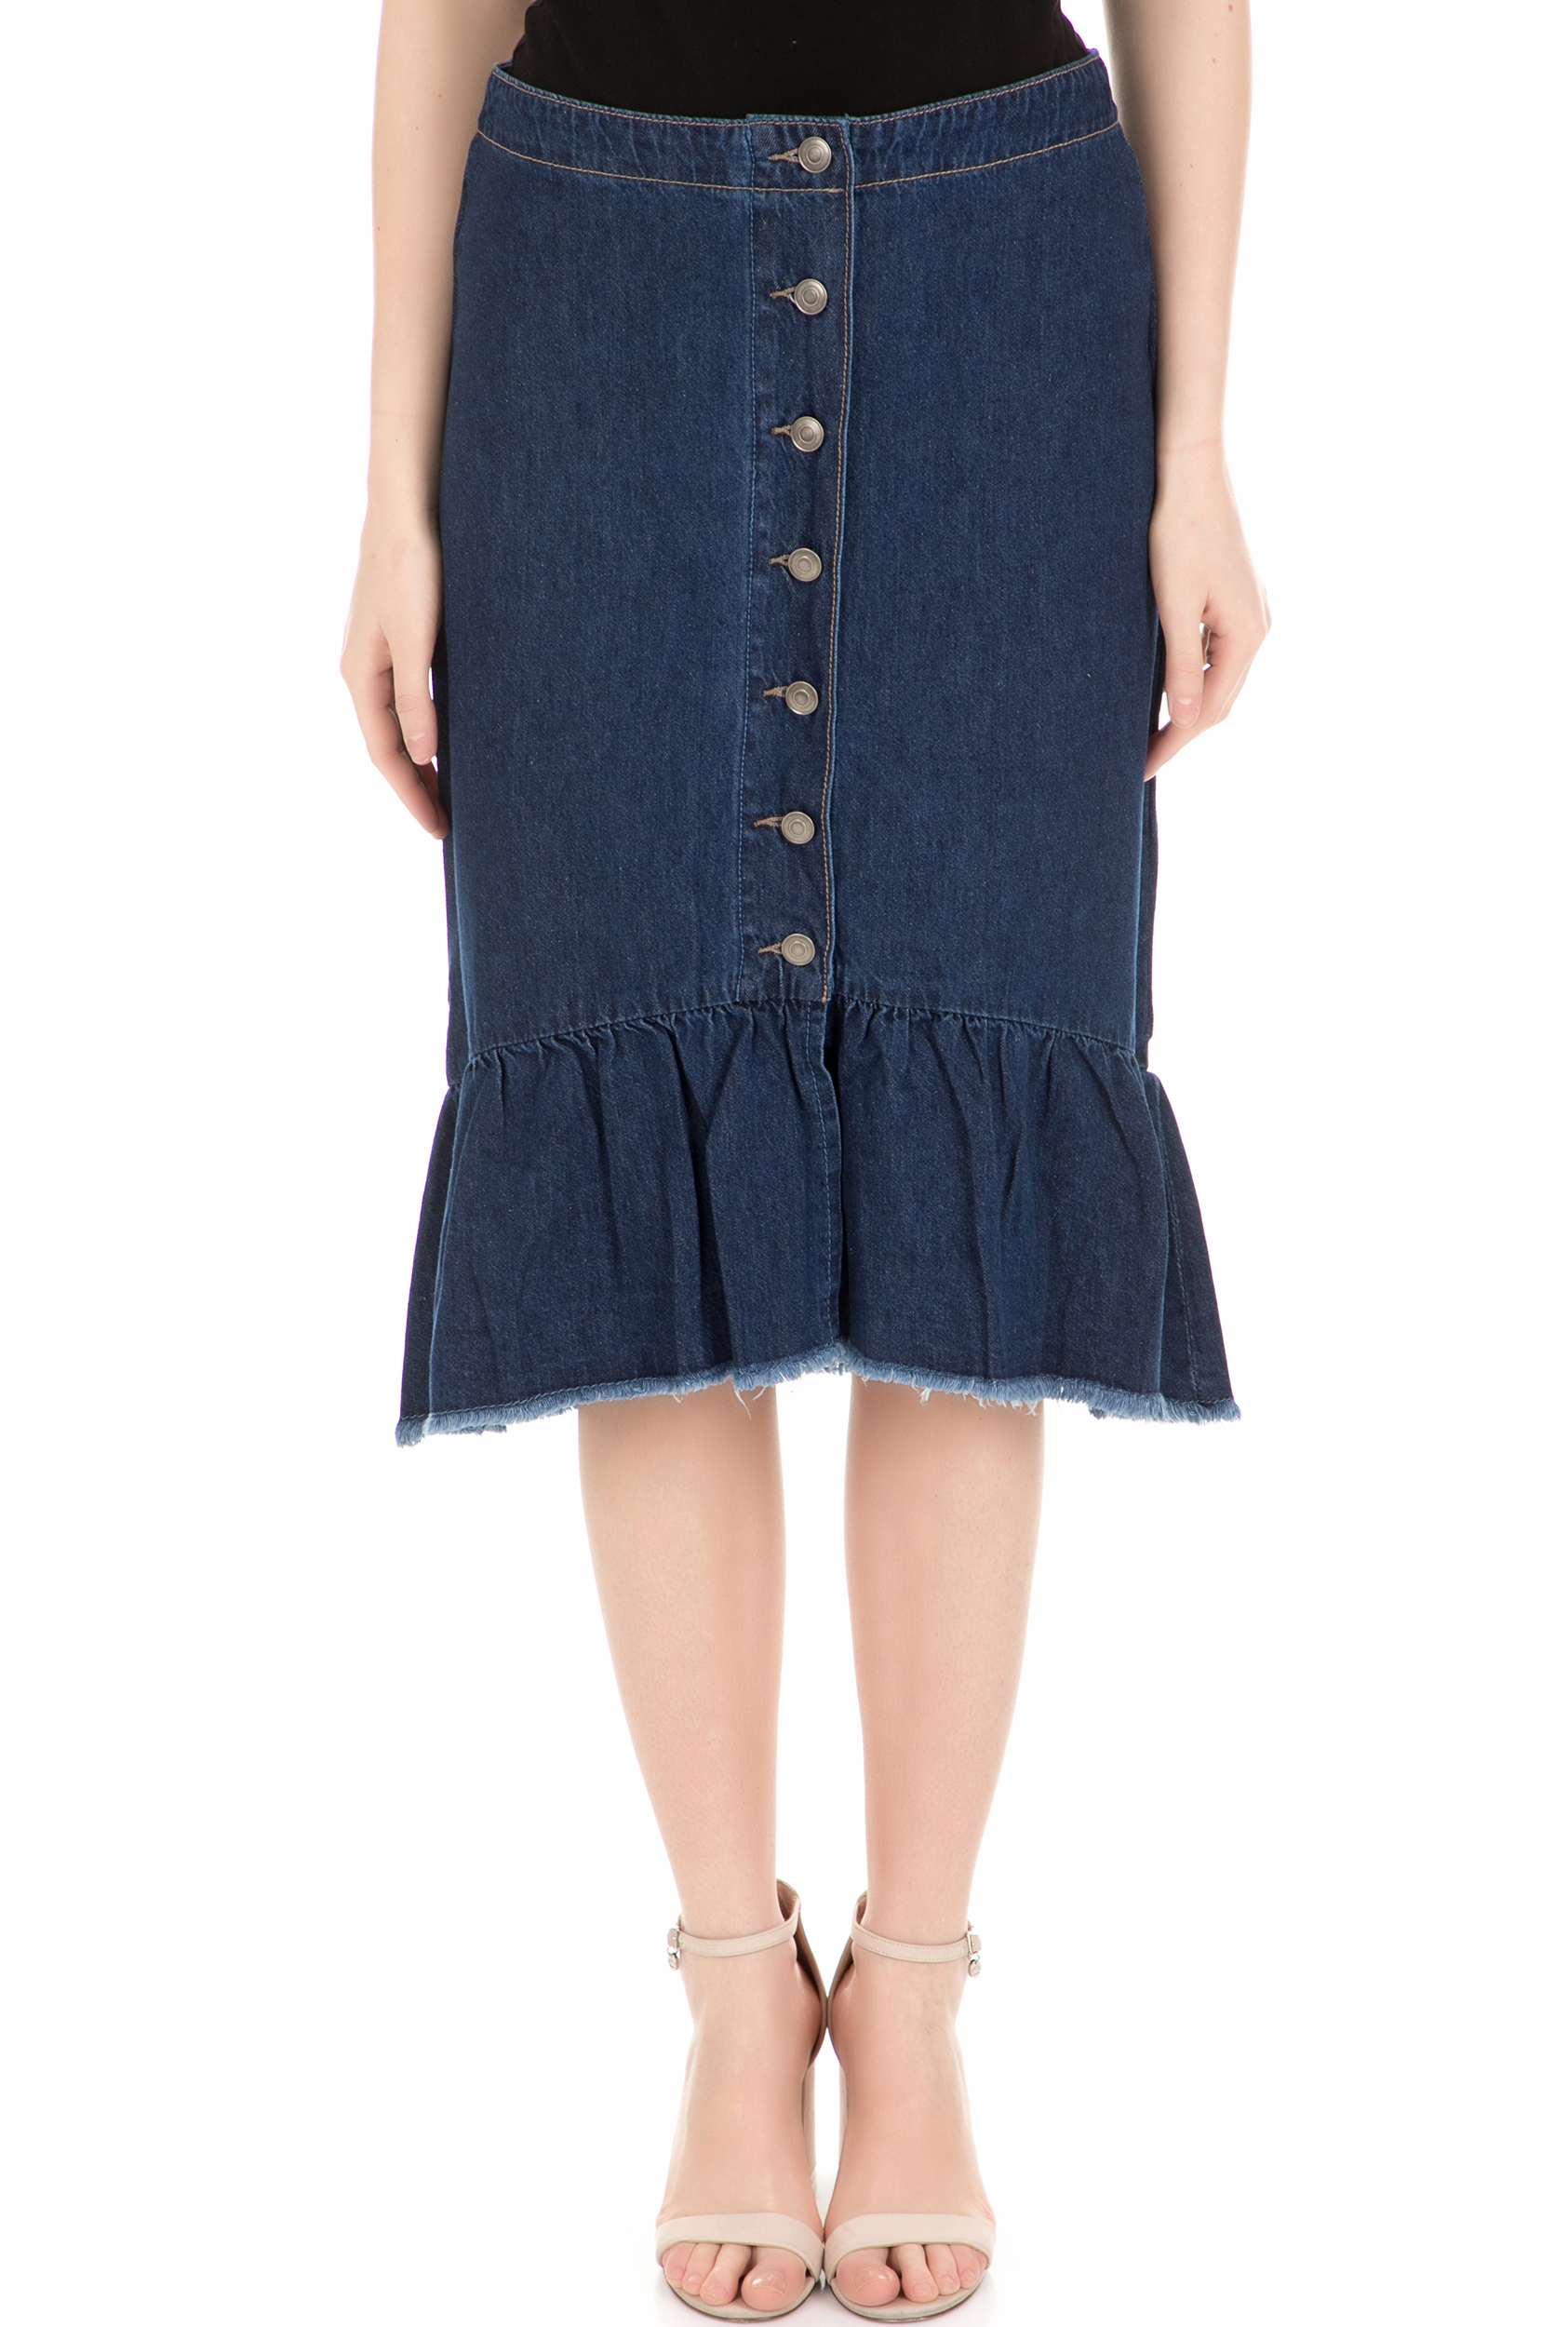 MOLLY BRACKEN - Γυναικεία φούστα MOLLY BRACKEN μπλε Γυναικεία/Ρούχα/Φούστες/Μέχρι το γόνατο